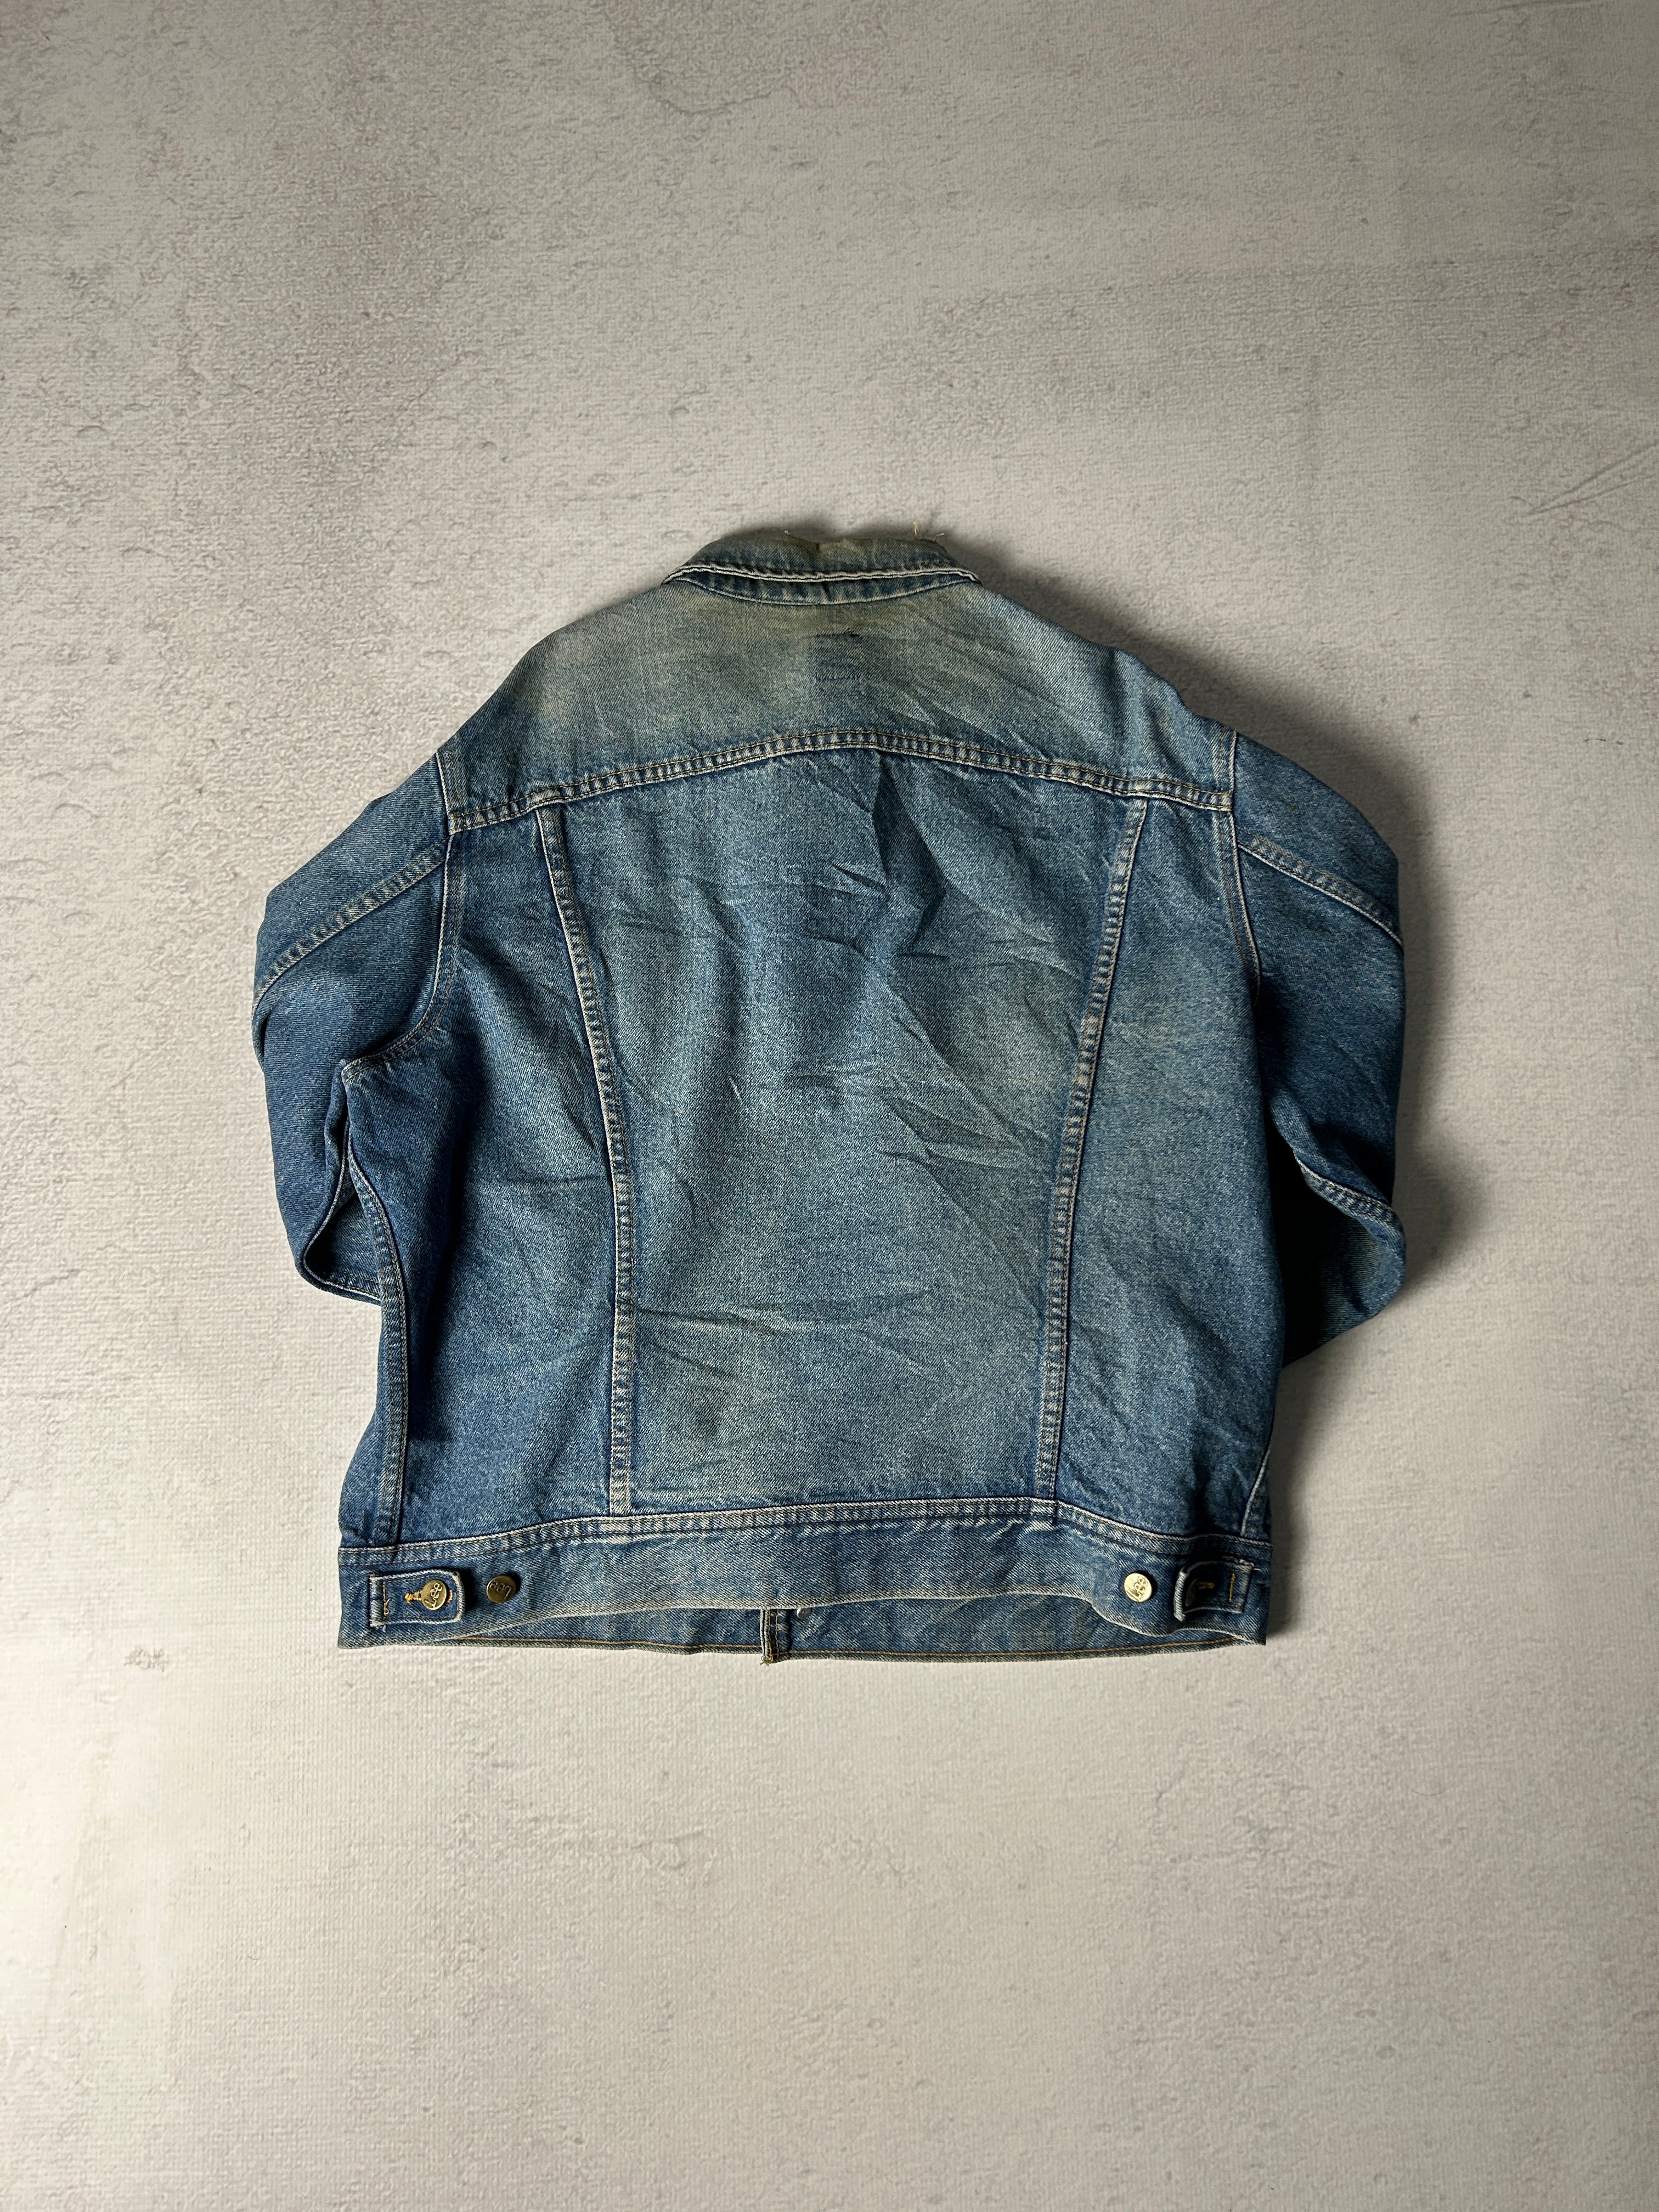 Vintage Lee Denim Jacket - Men's XL